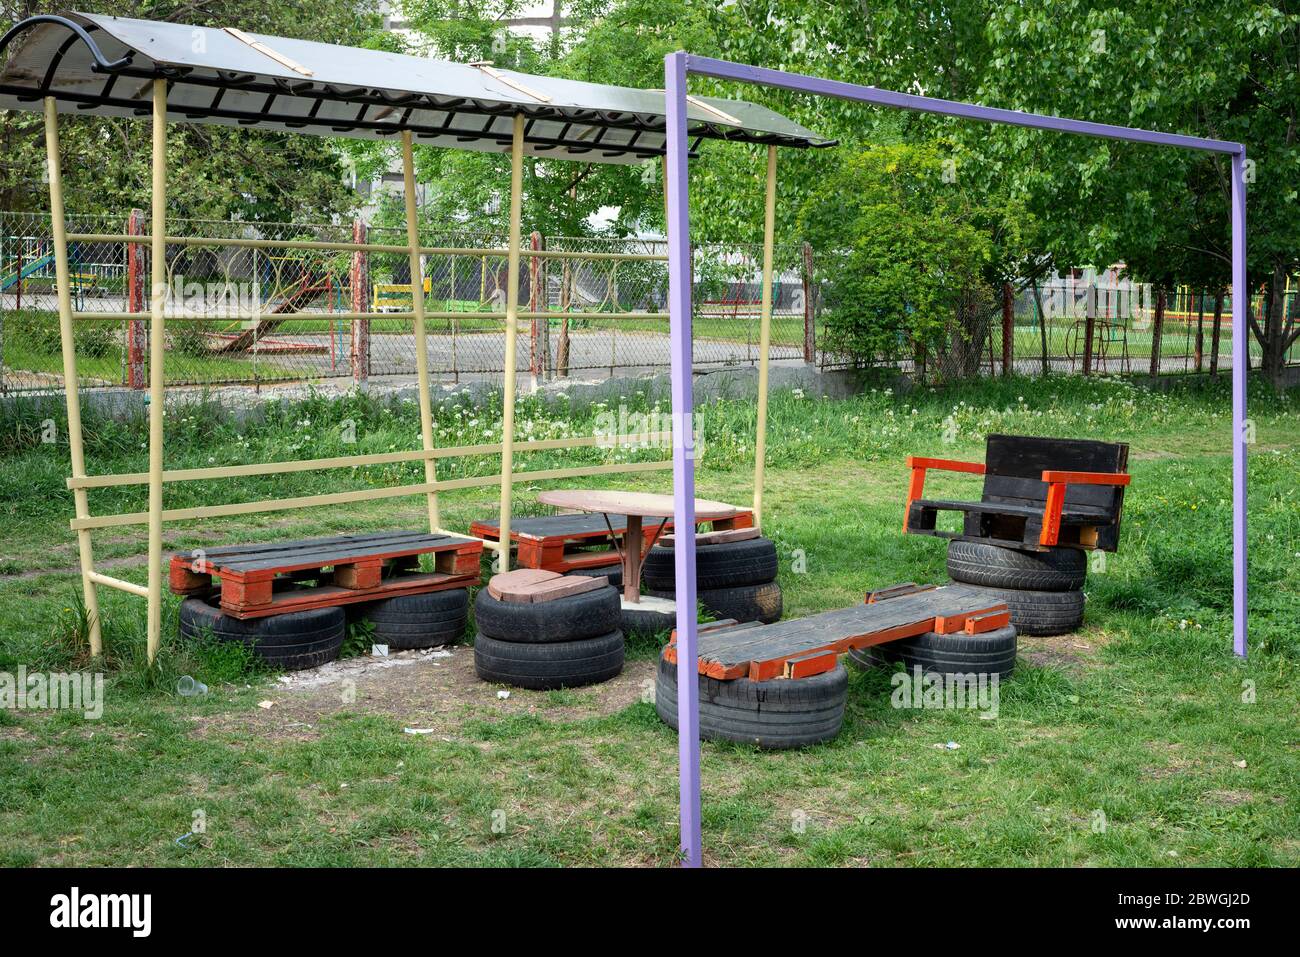 Semplice area picnic fatta a mano con vecchi pneumatici e pallet in legno in ambiente urbano a Sofia, Bulgaria, Europa orientale, Balcani, UE Foto Stock